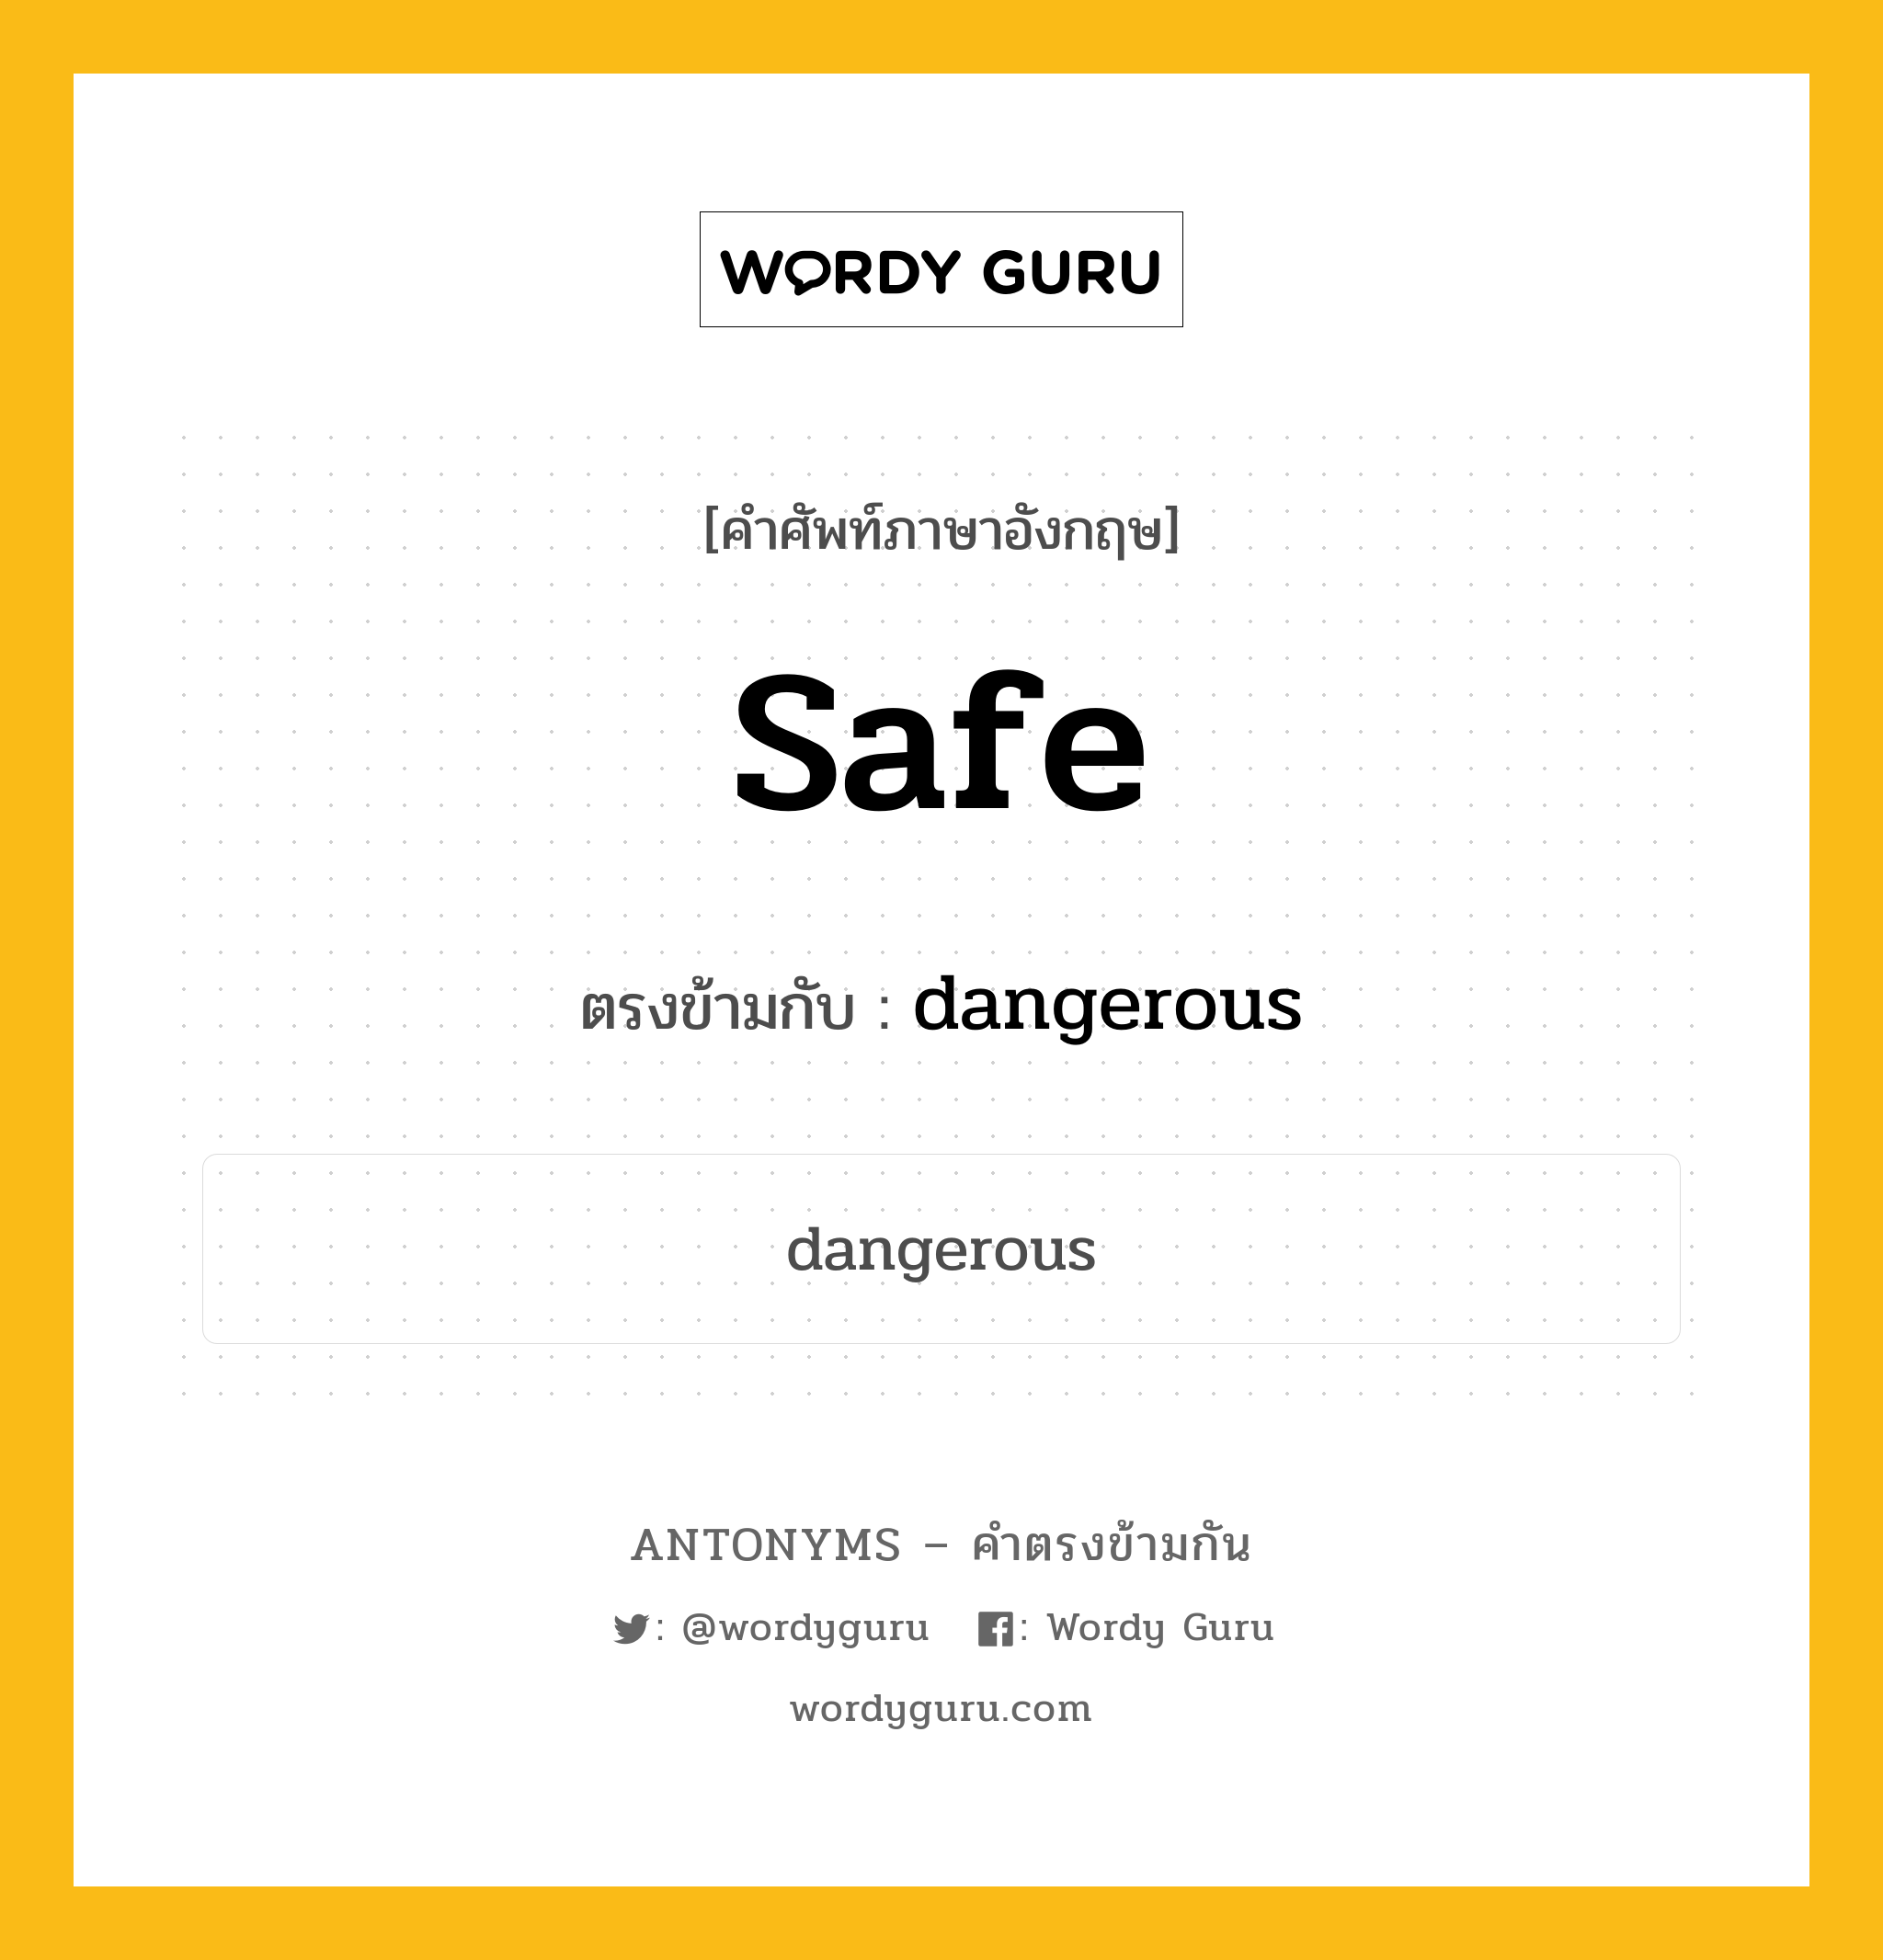 safe เป็นคำตรงข้ามกับคำไหนบ้าง?, คำศัพท์ภาษาอังกฤษ safe ตรงข้ามกับ dangerous หมวด dangerous